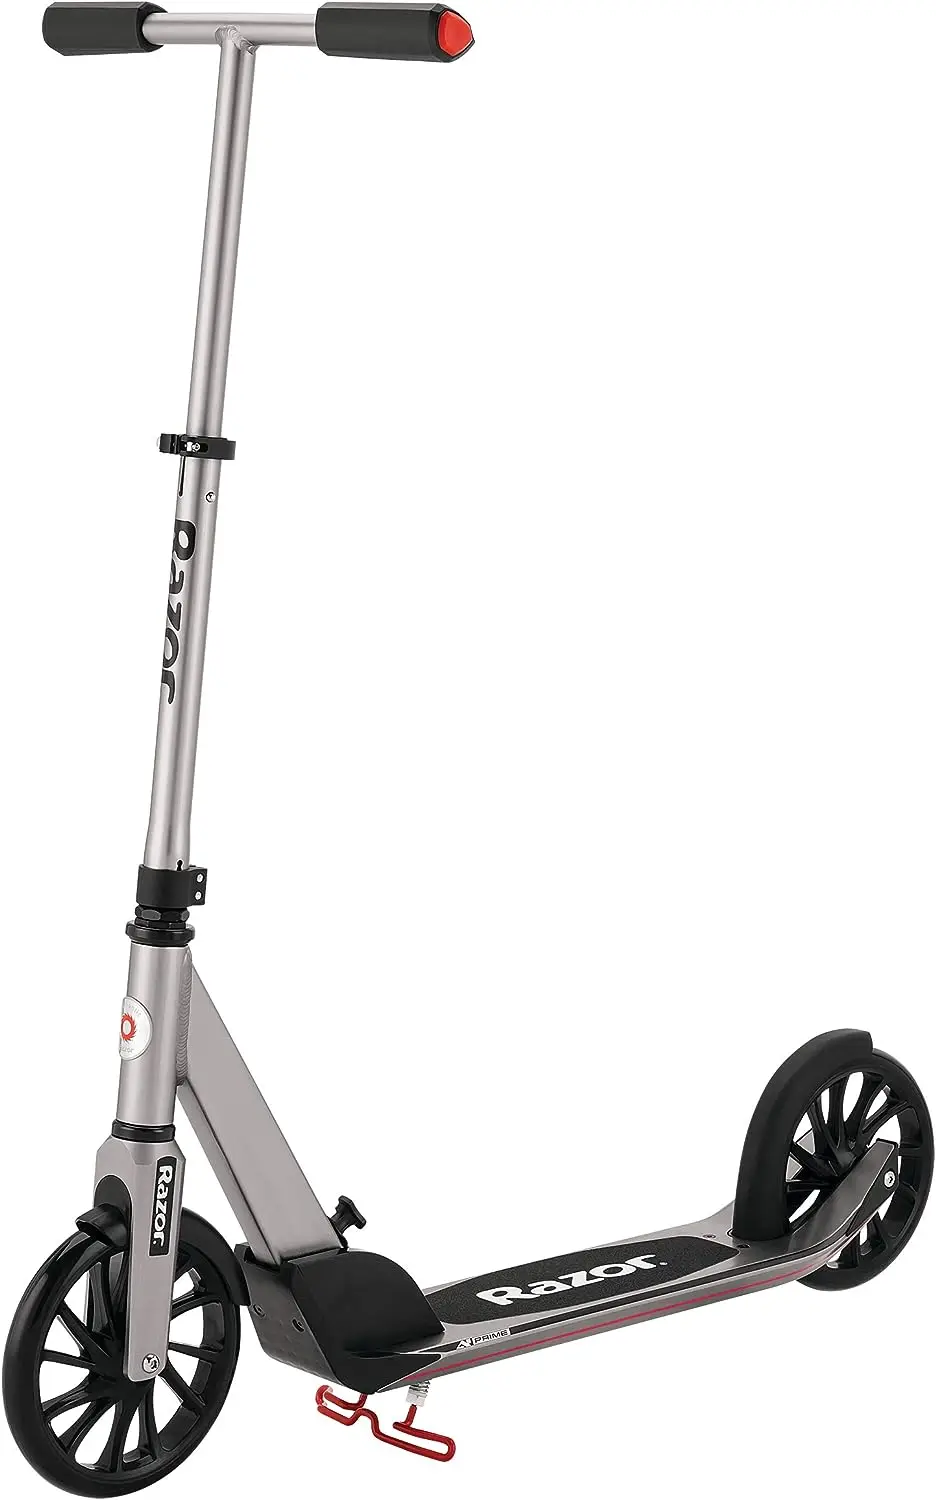 

Скутер Prime Kick для детей в возрасте от 8 лет, сверхбольшая колода, колеса из уретана 8 дюймов, анодированная алюминиевая рама, технология защиты от погремушек, Sco